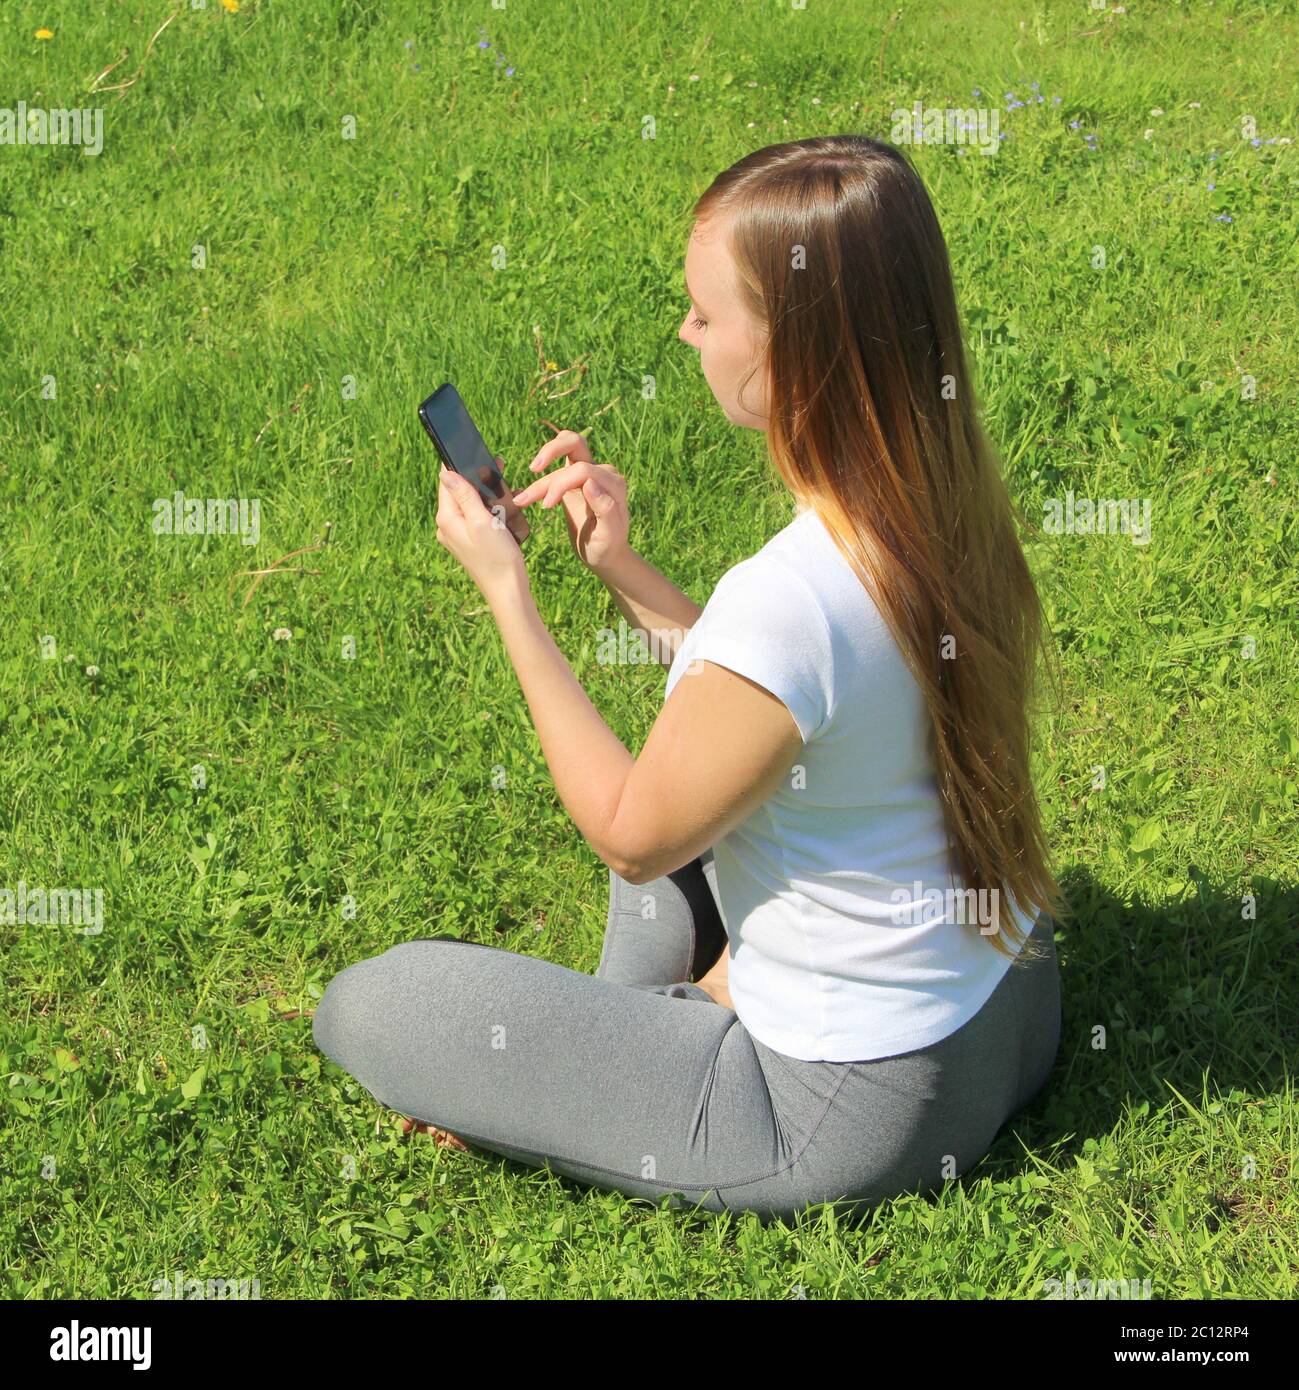 Ein junges schönes Mädchen von europäischem Aussehen in einem weißen T-Shirt mit langen blonden Haaren sitzt auf grünem Gras, auf dem Rasen mit einem Handy in den Händen, kippt durch soziale Netzwerke, arbeitet im Telefon. Stockfoto